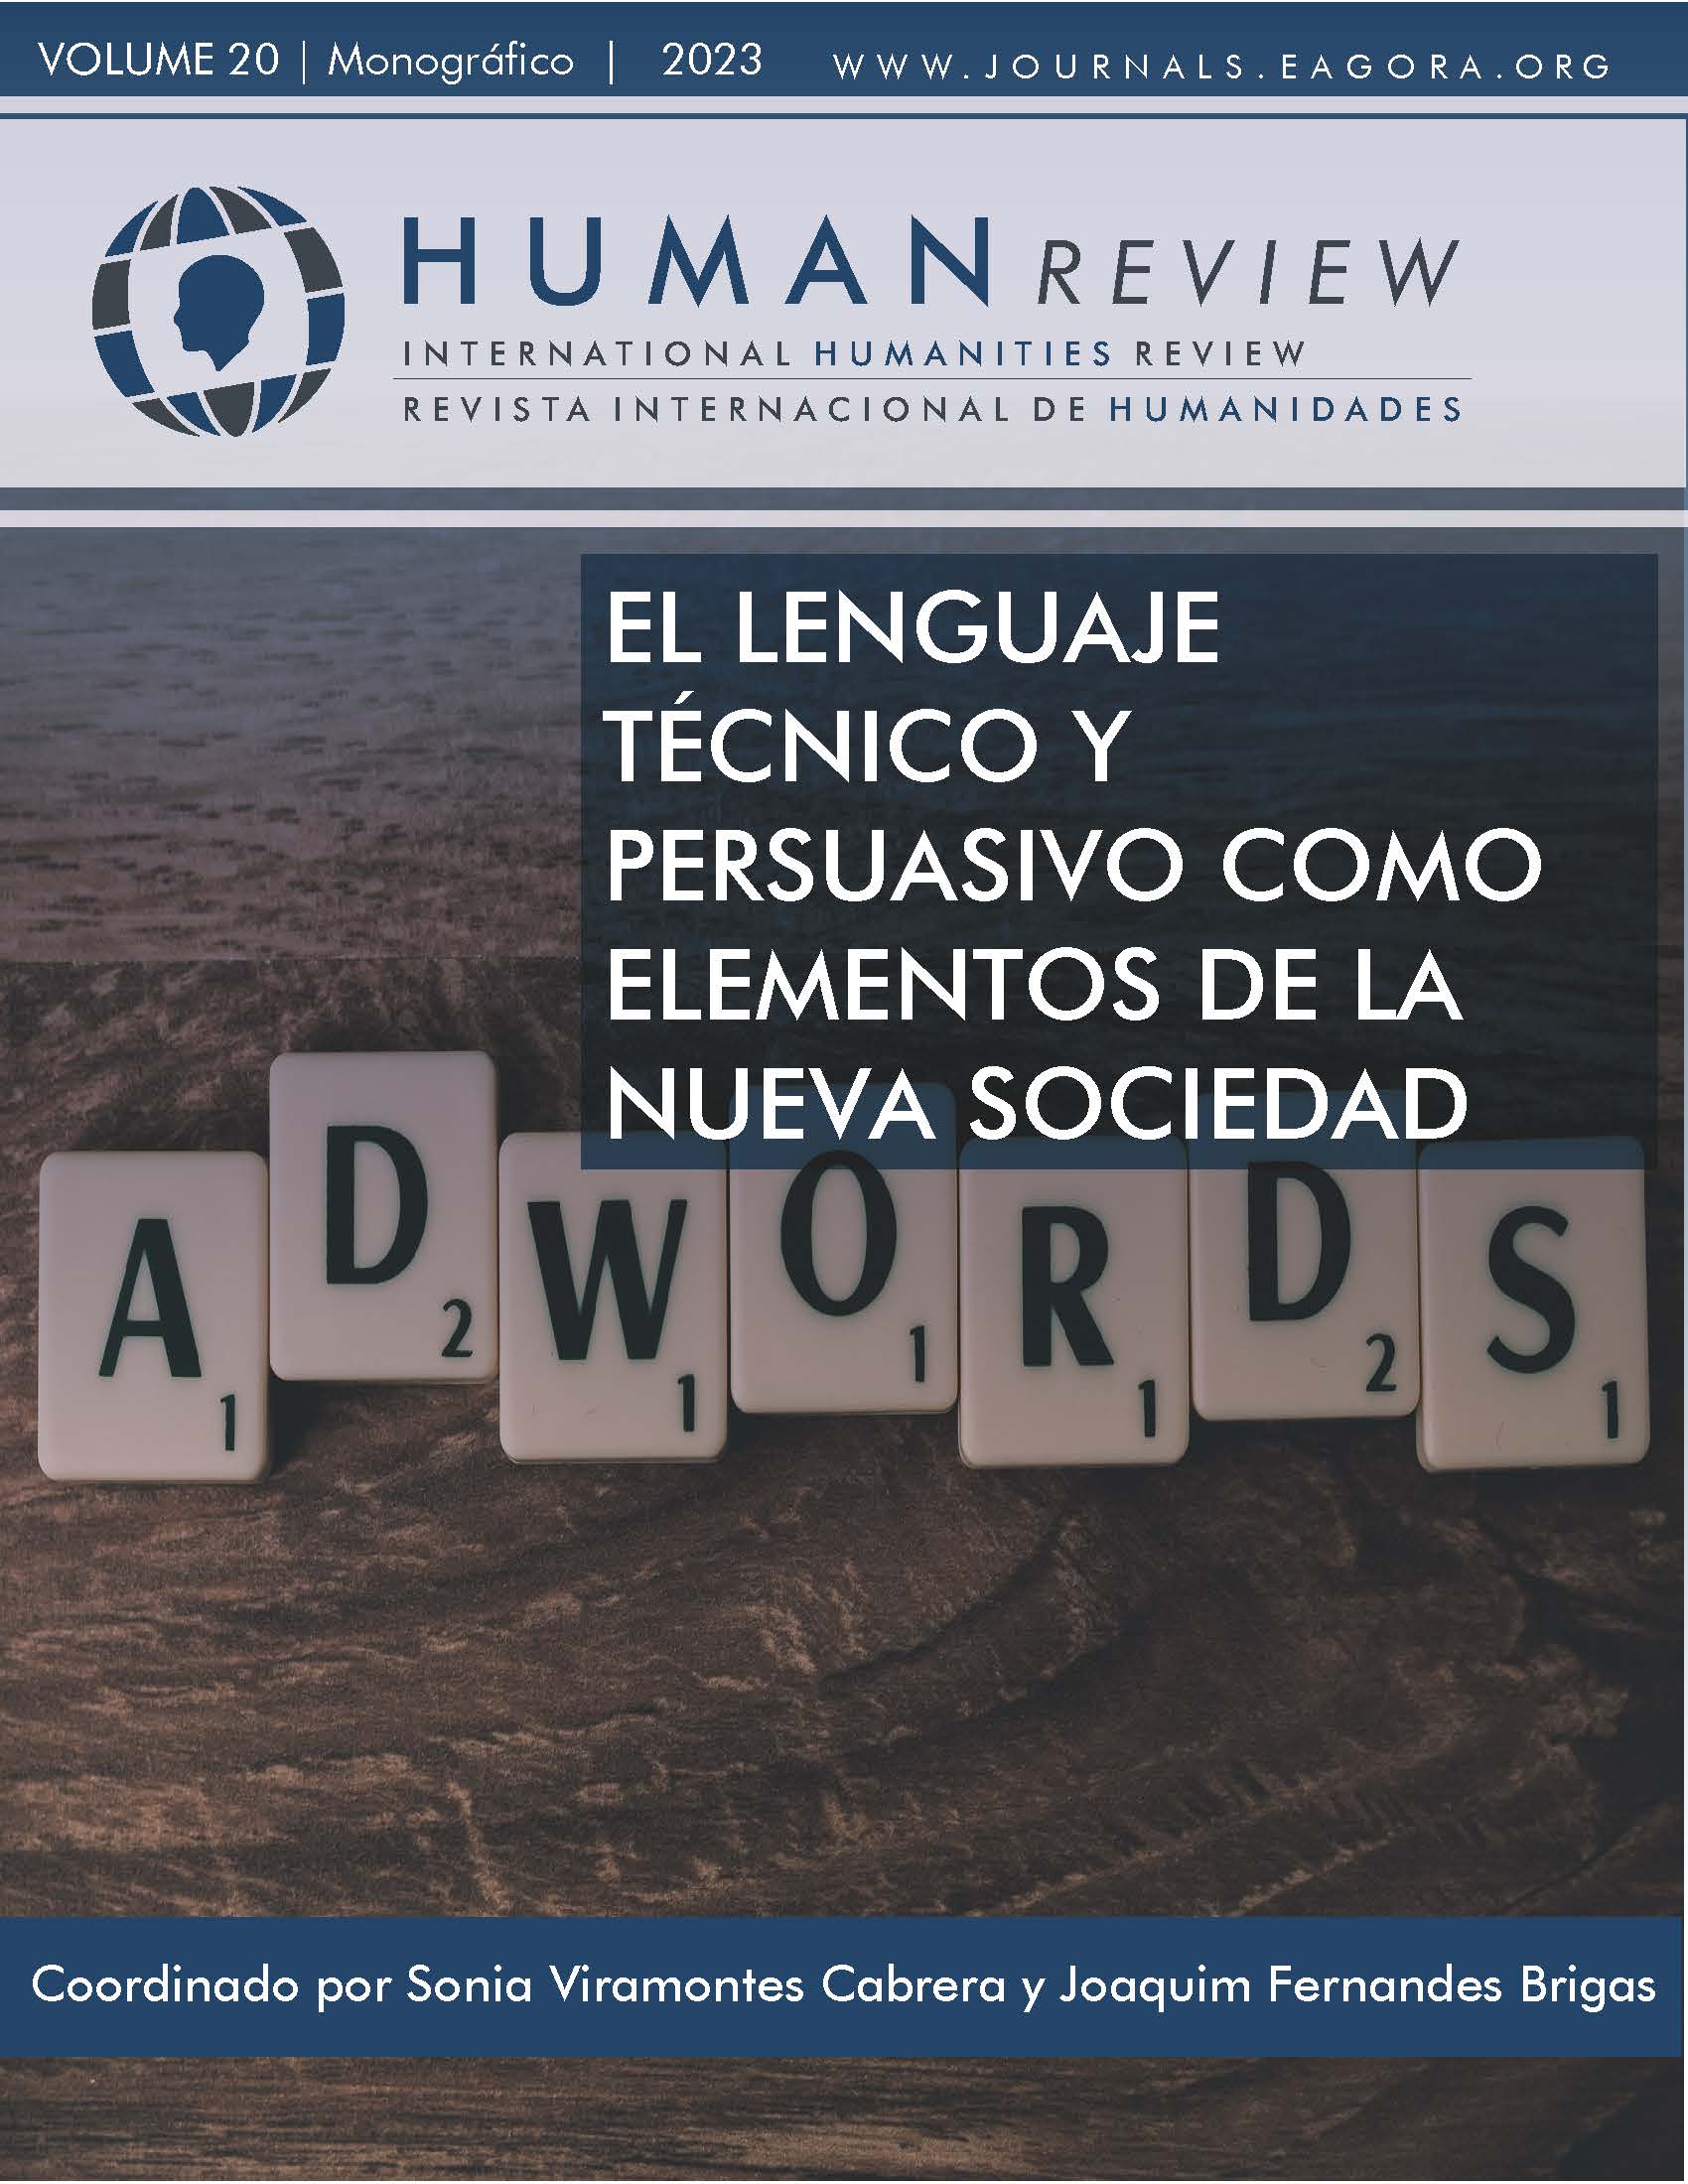 					Ver Vol. 20 Núm. 5 (2023): Monográfico: "El lenguaje técnico y persuasivo como elementos de la nueva sociedad"
				